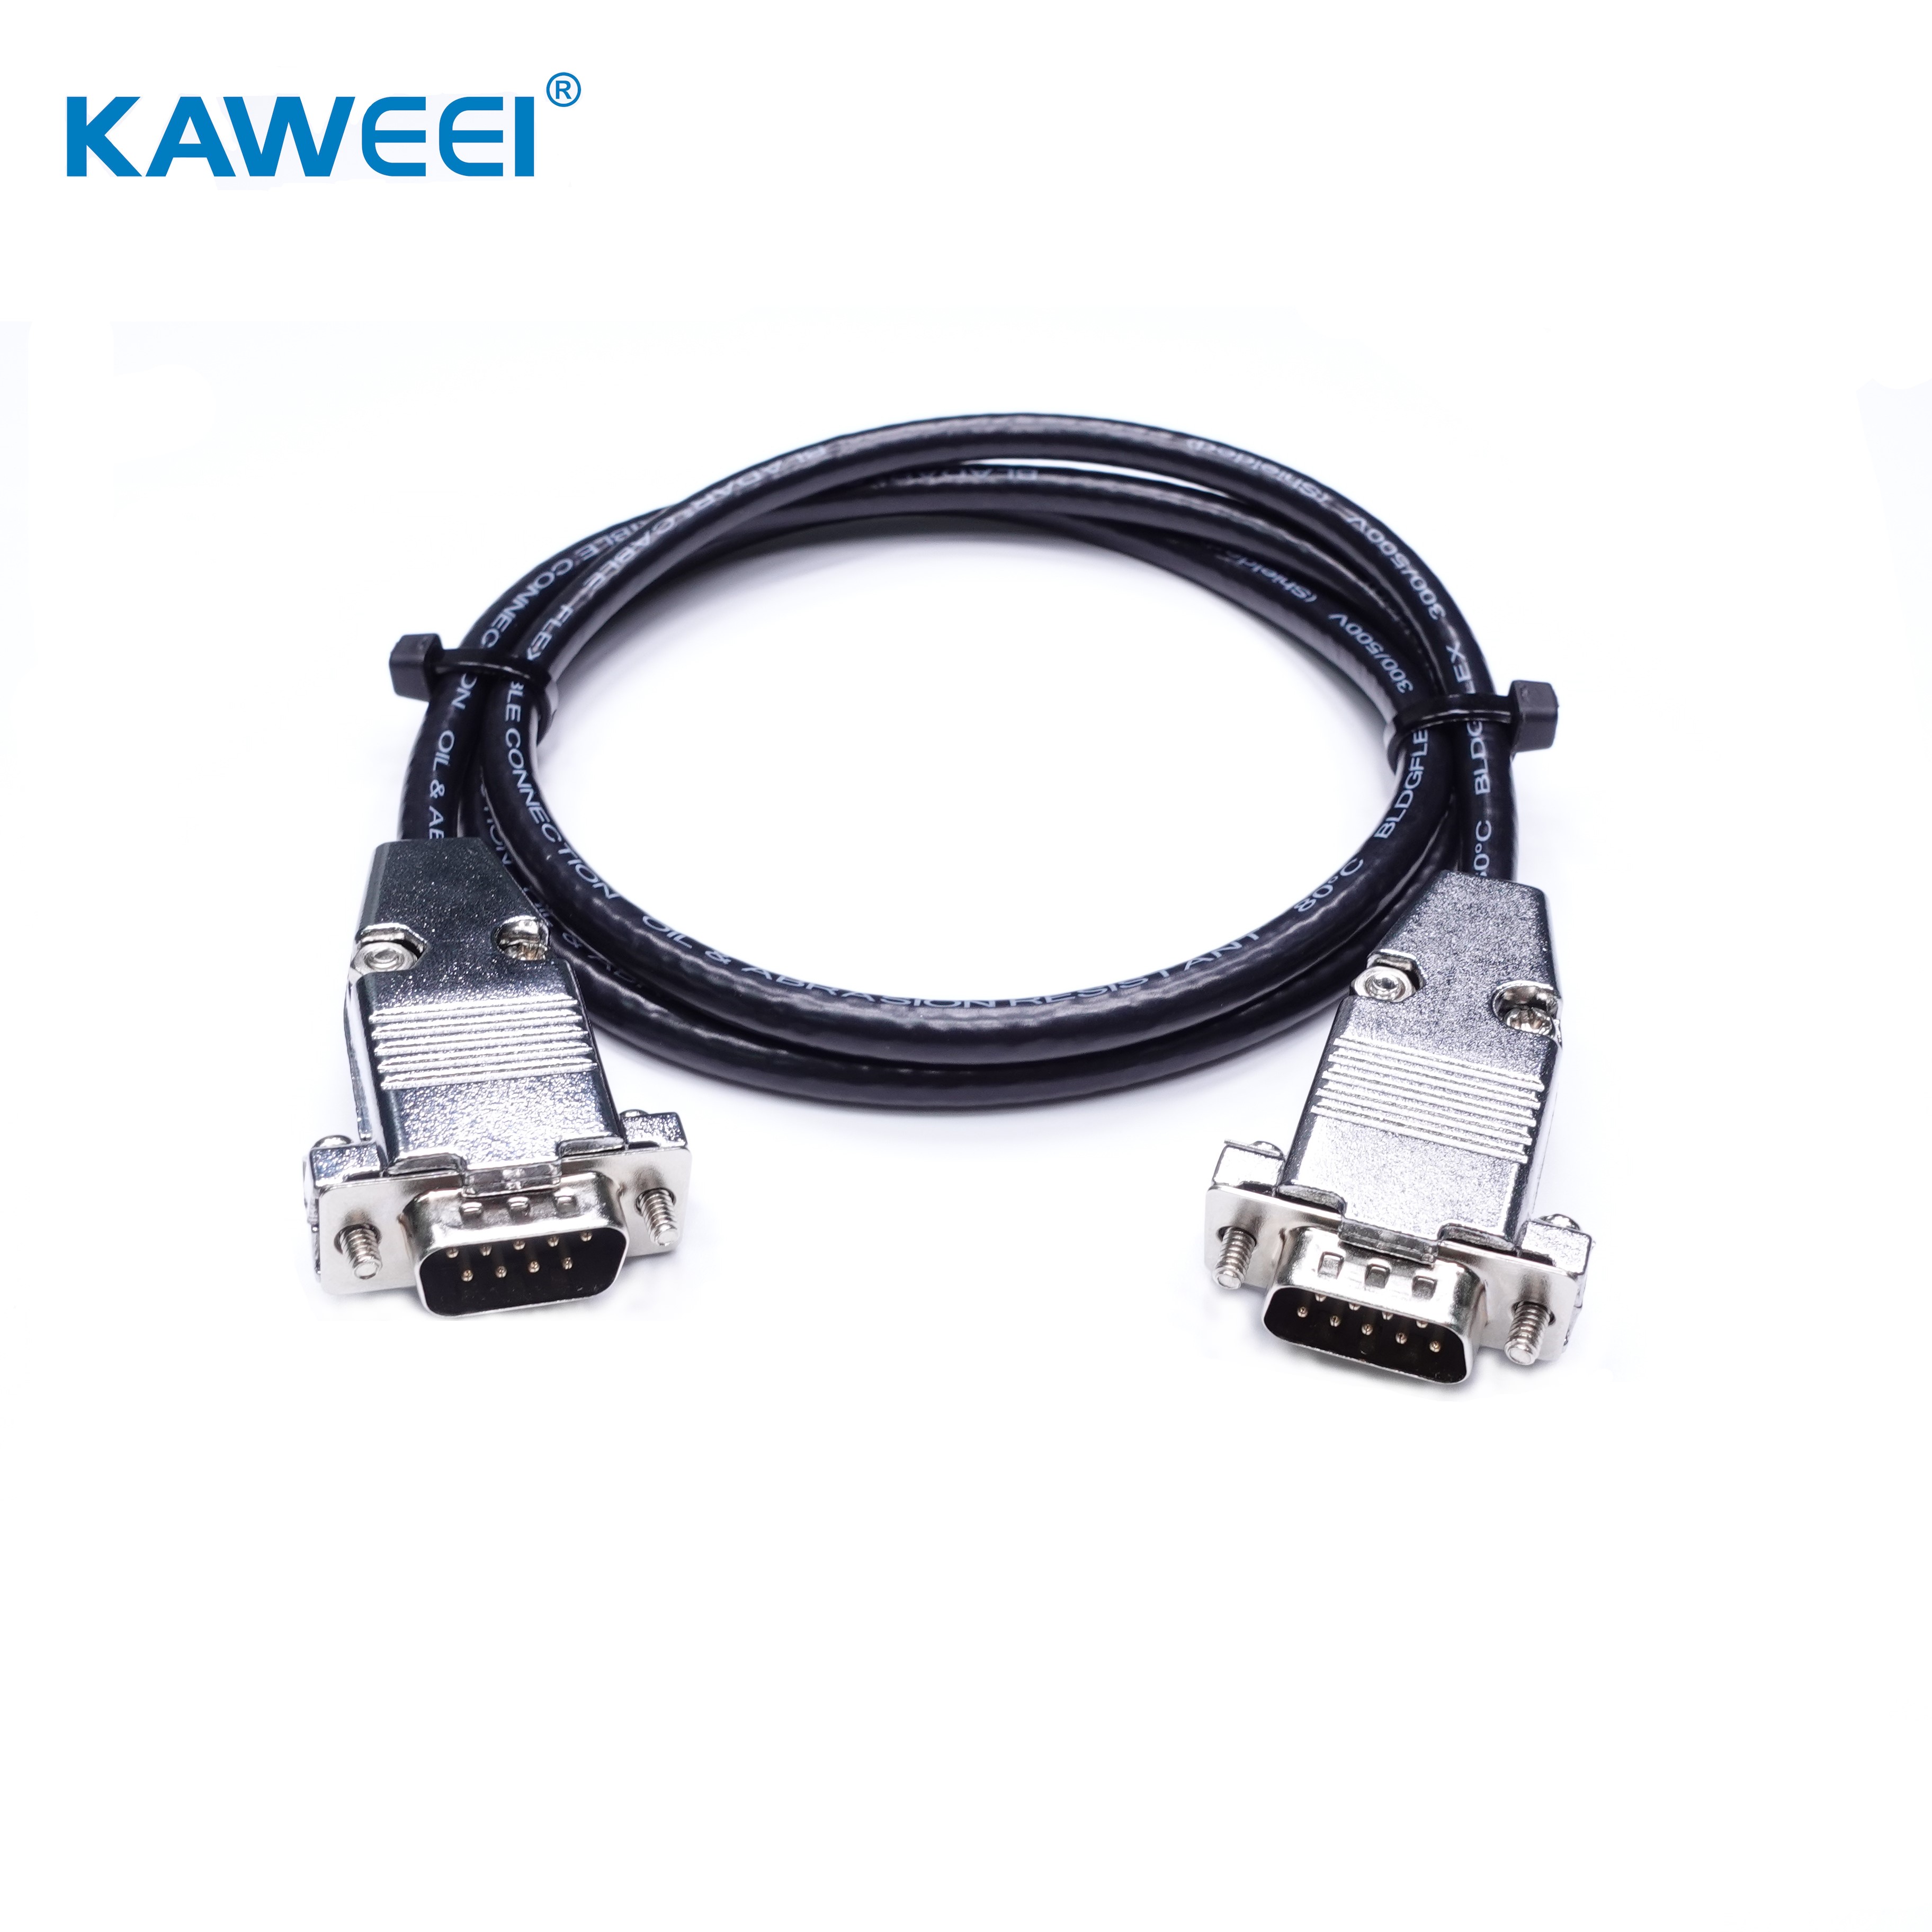 Hochwertiger männlicher D-SUB 9PIN-Display-Kabelsatz, Kommunikationskabelsatz